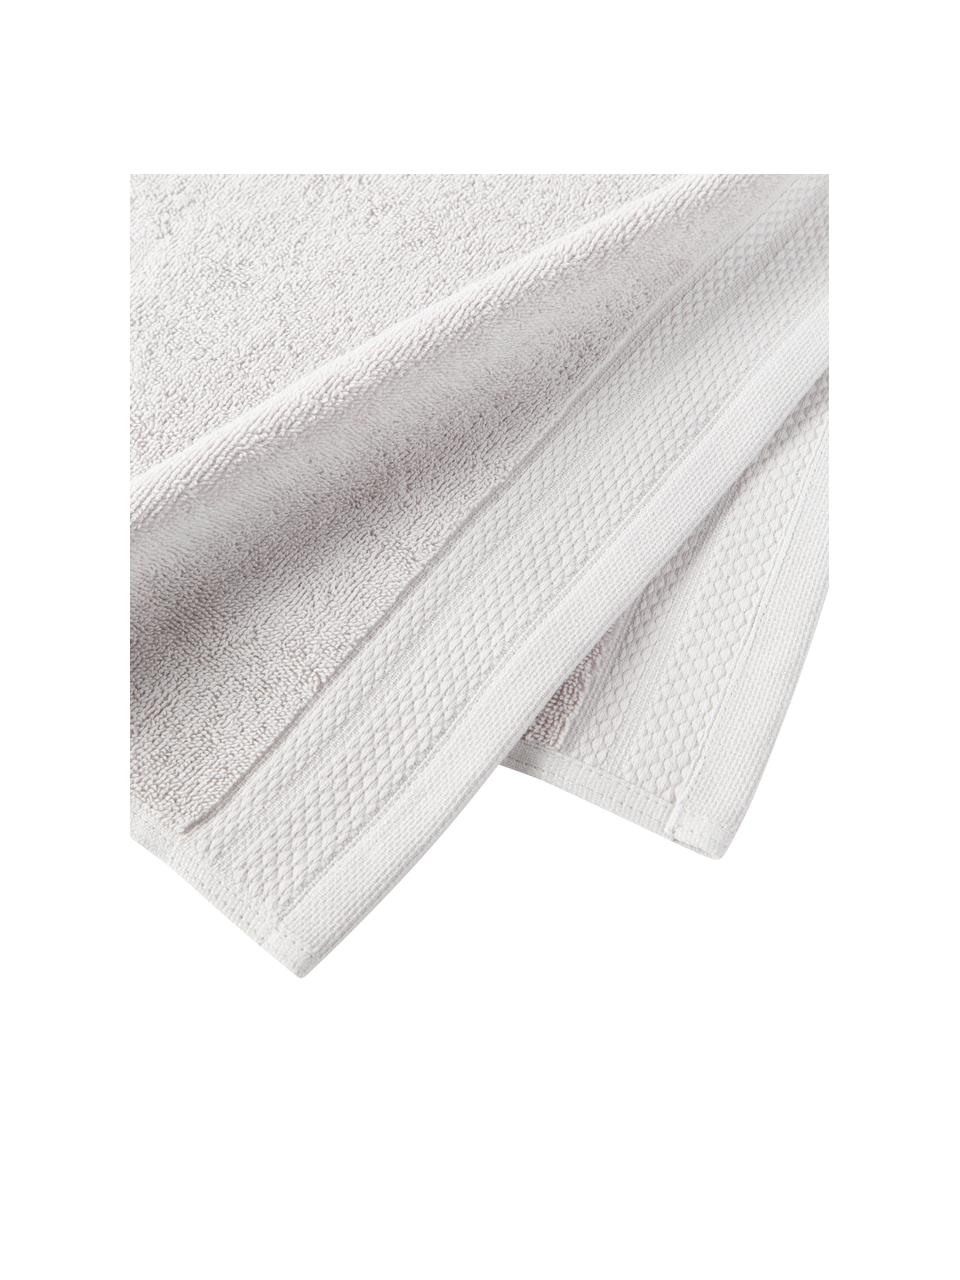 Súprava uterákov z organickej bavlny Premium, 4 diely, Svetlosivá, Súprava s rôznymi veľkosťami